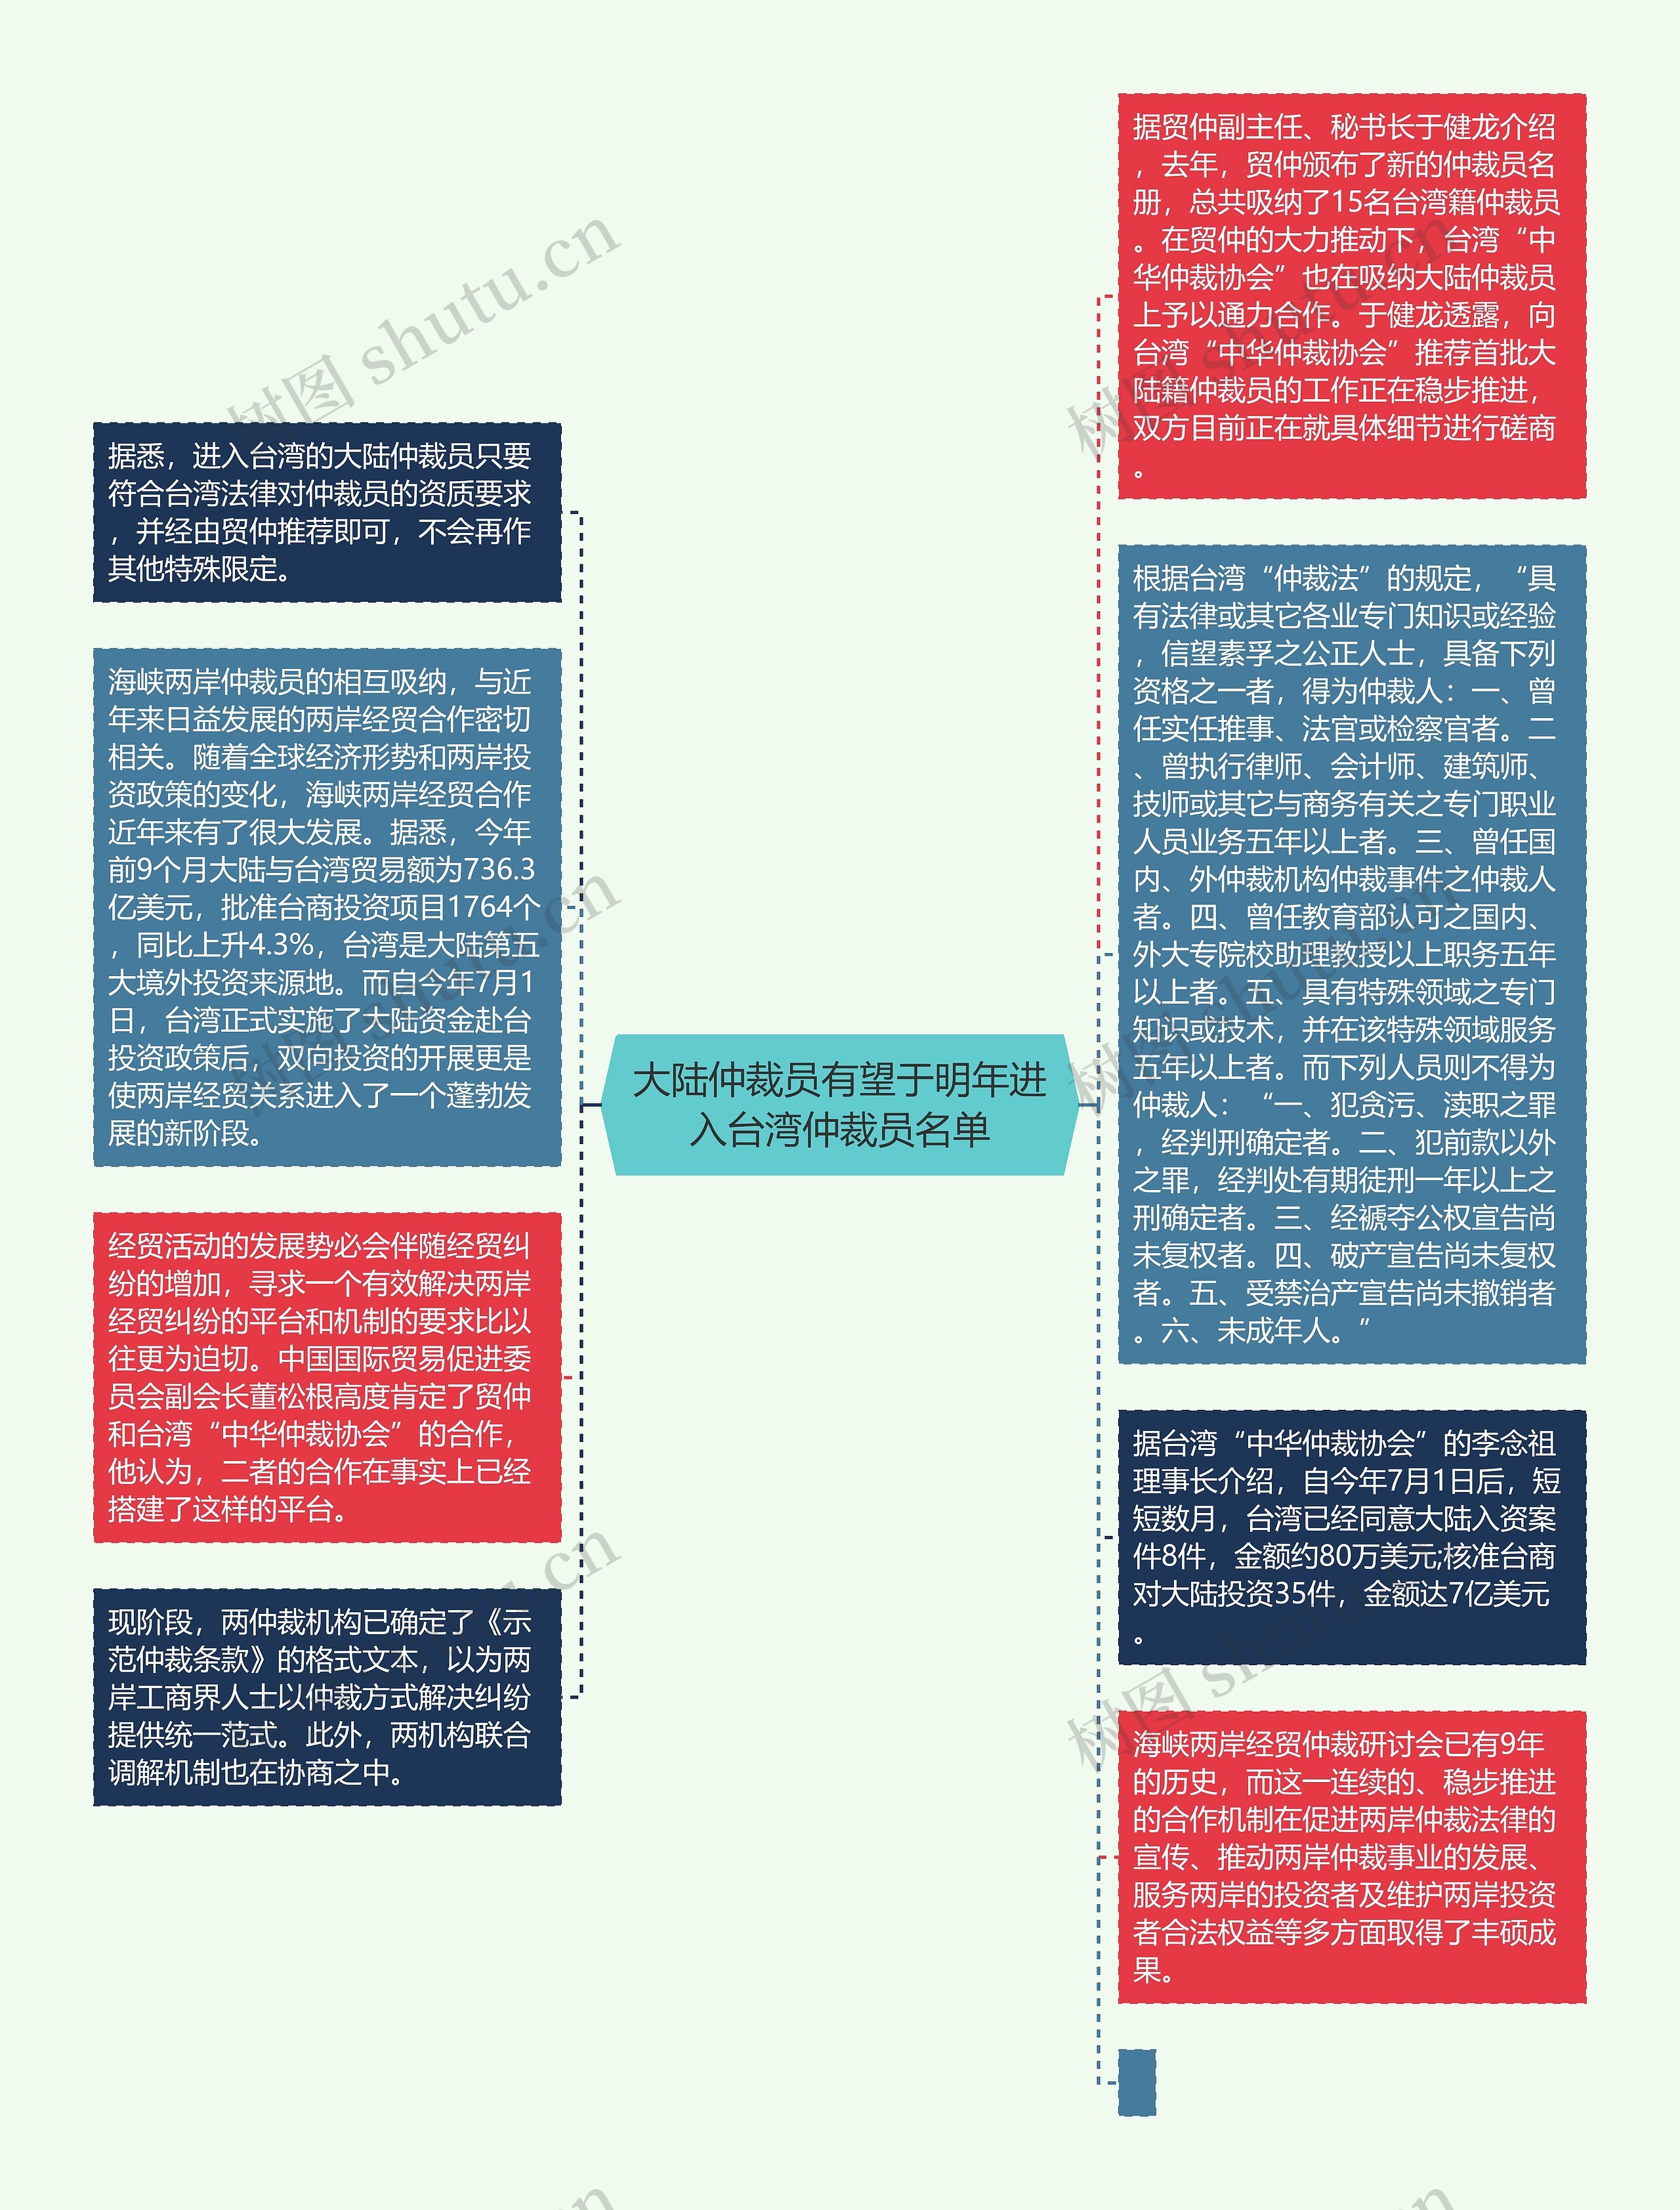 大陆仲裁员有望于明年进入台湾仲裁员名单思维导图